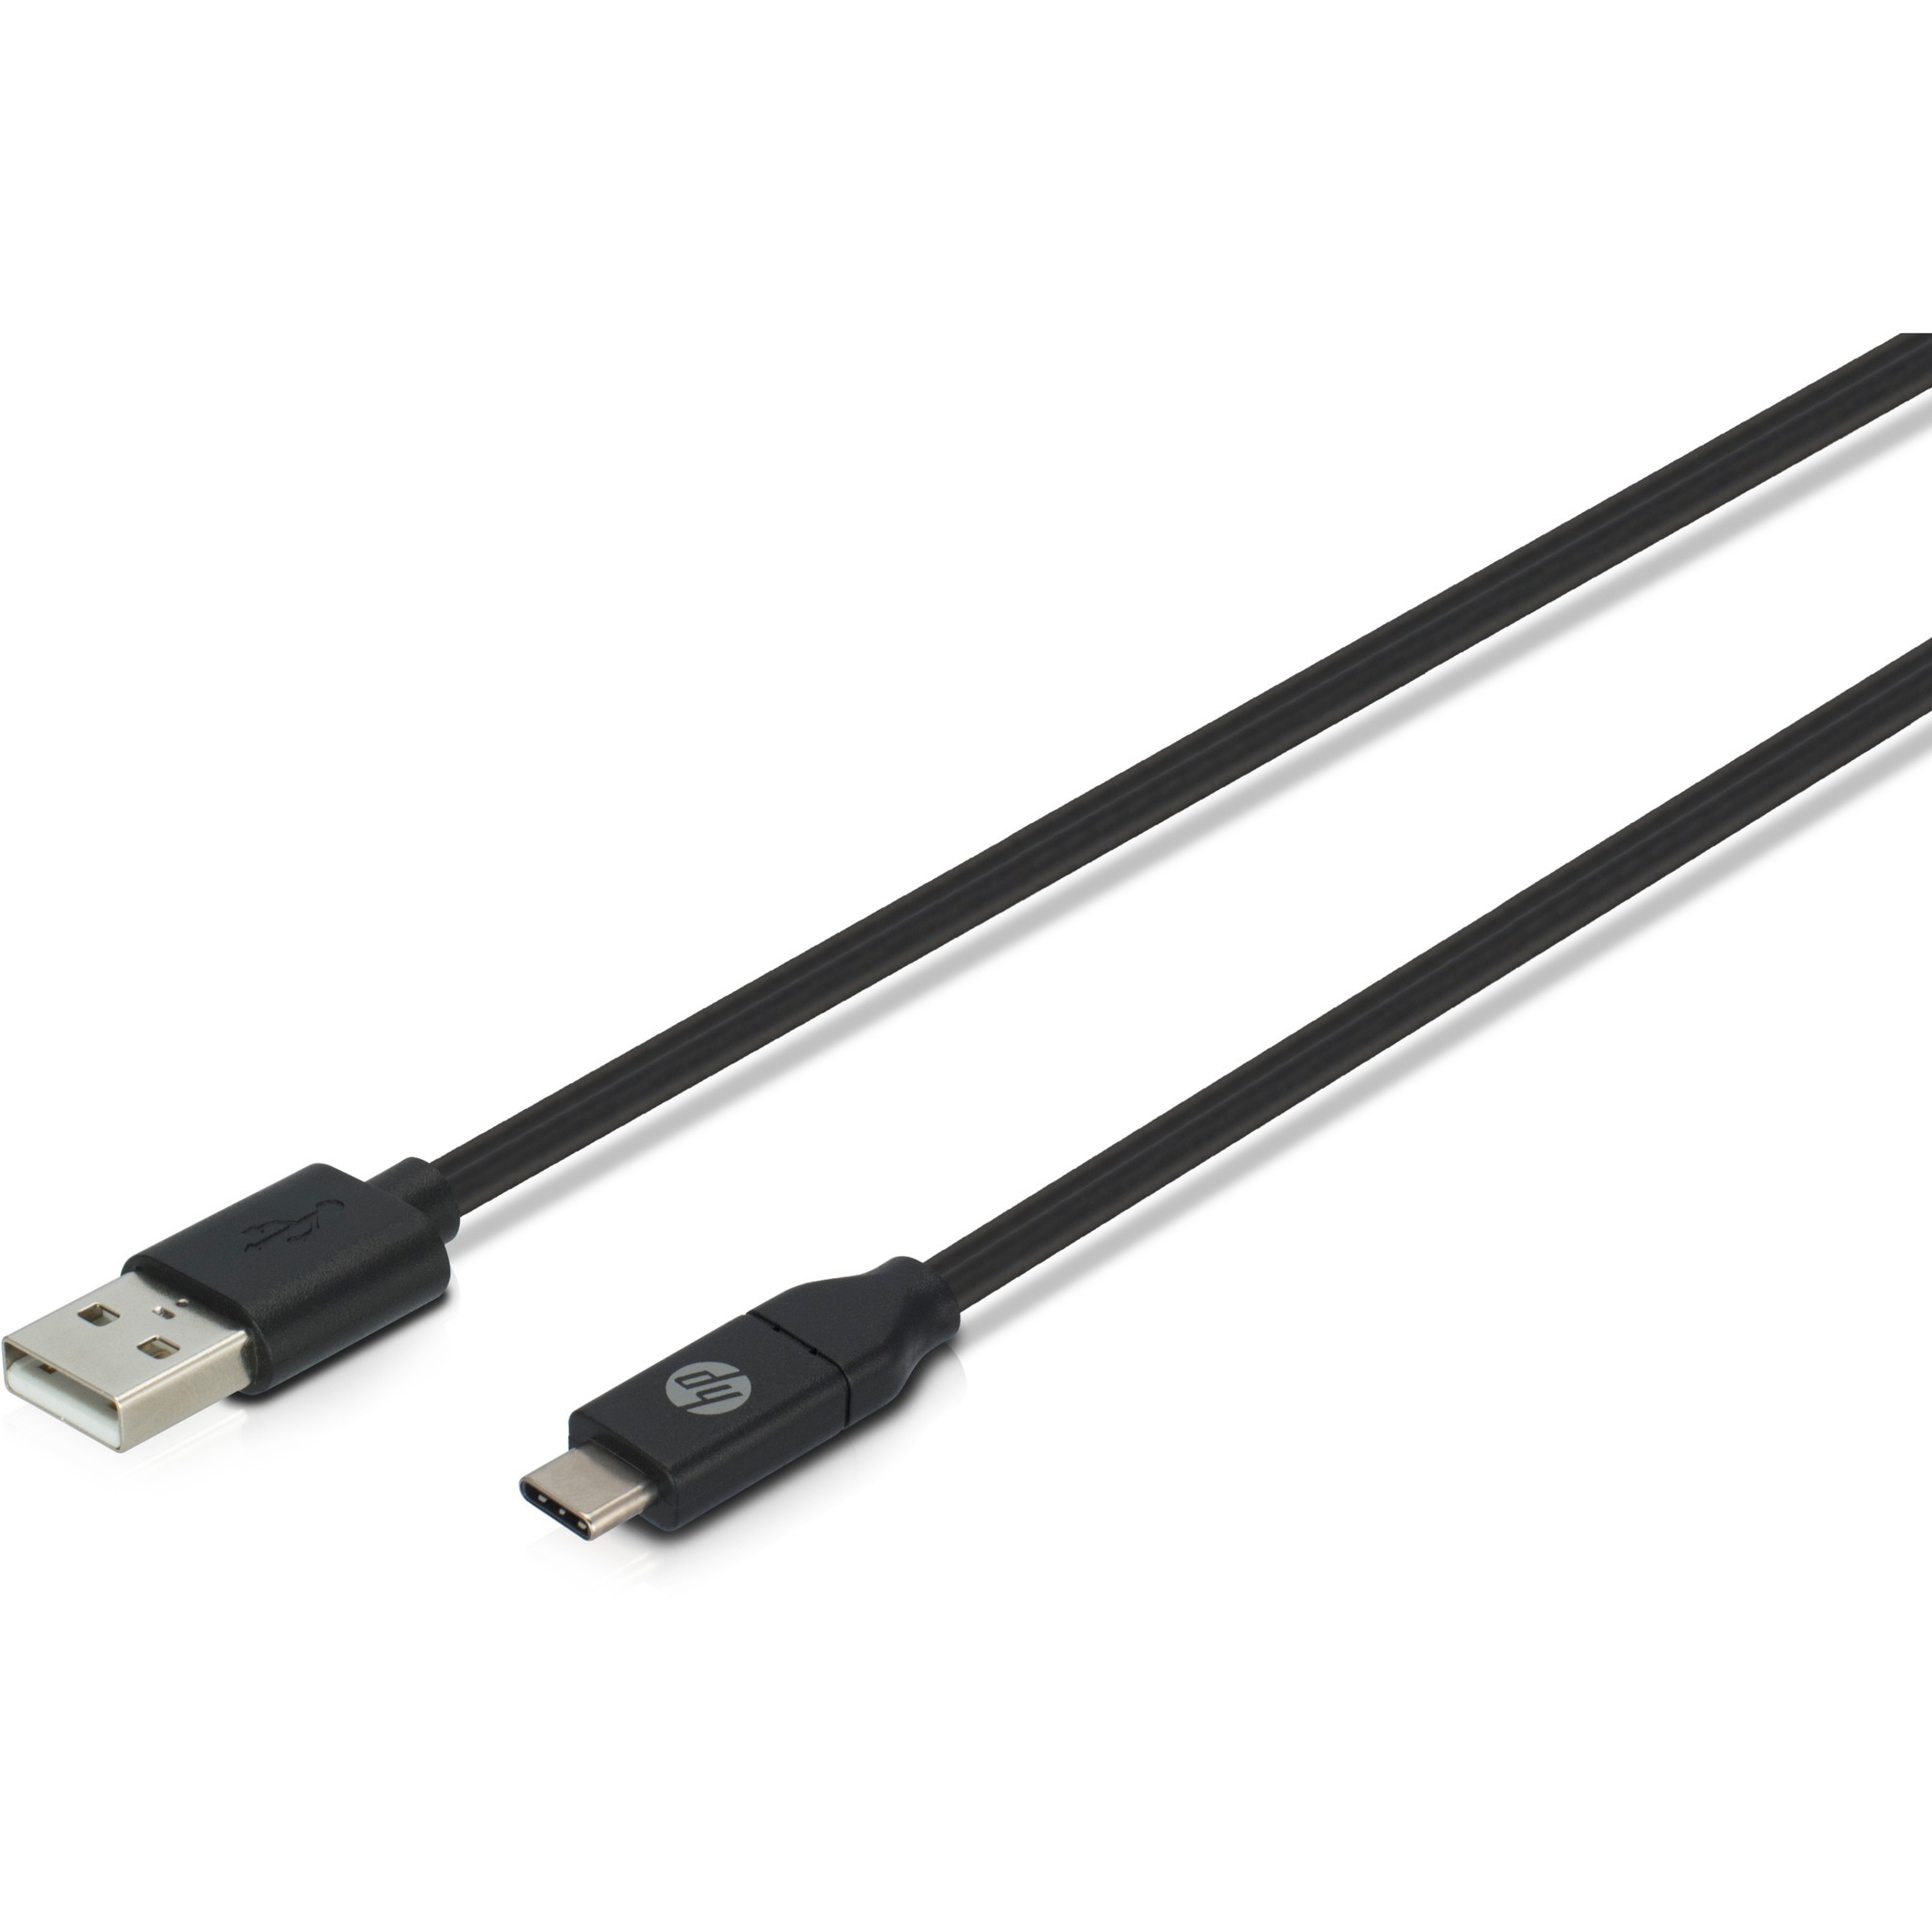 Image of Alternate - Kabel USB A (Stecker) > USB C (Stecker) online einkaufen bei Alternate